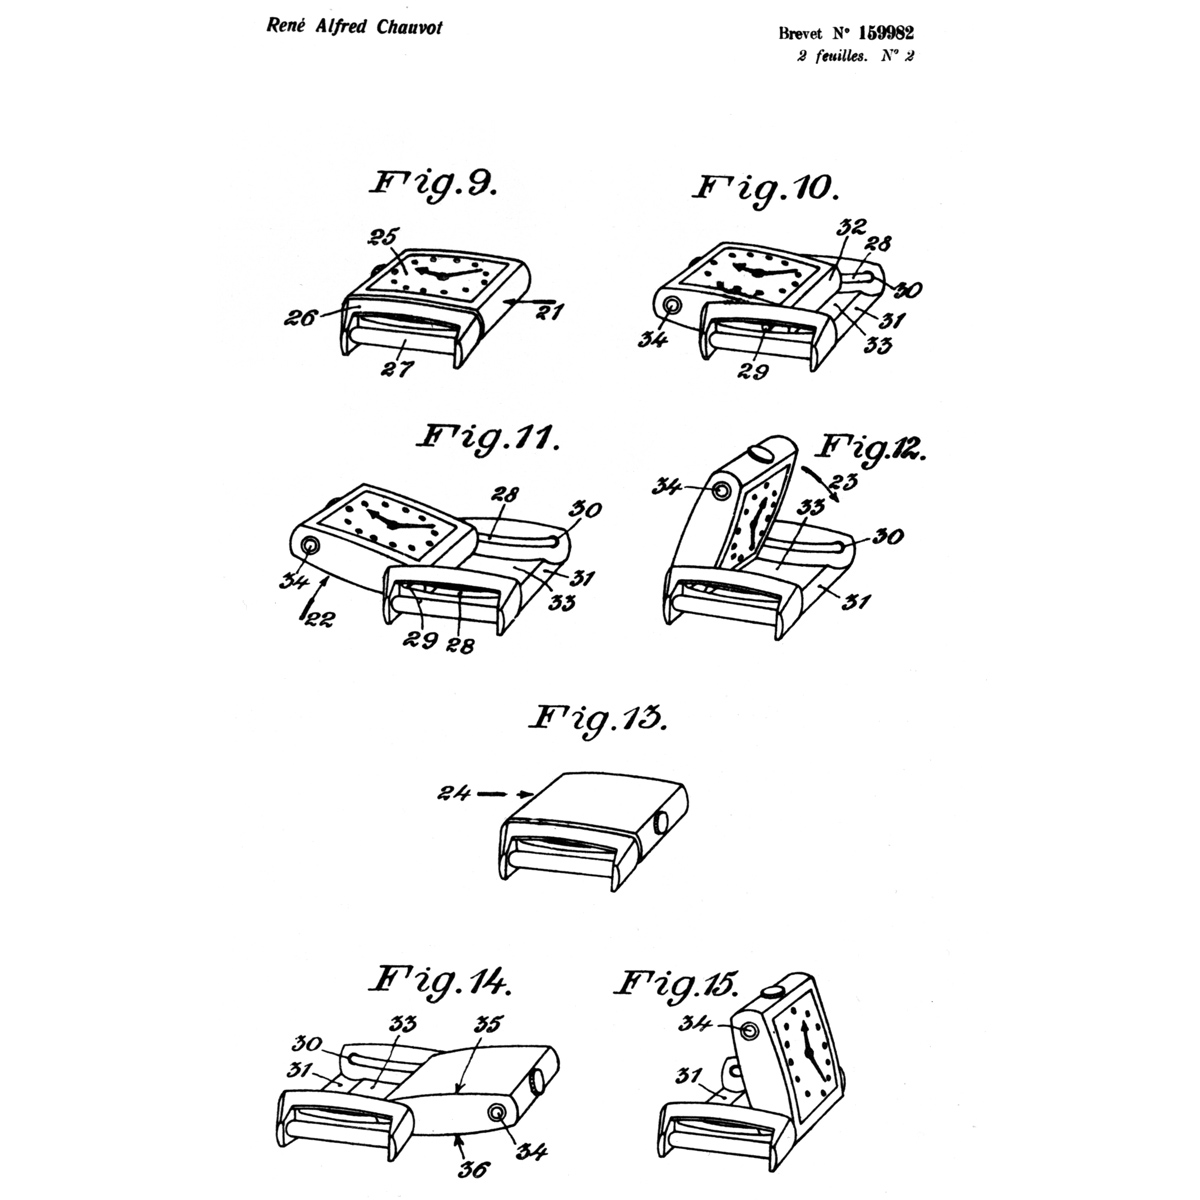 「レベルソ」の特許原本の一部